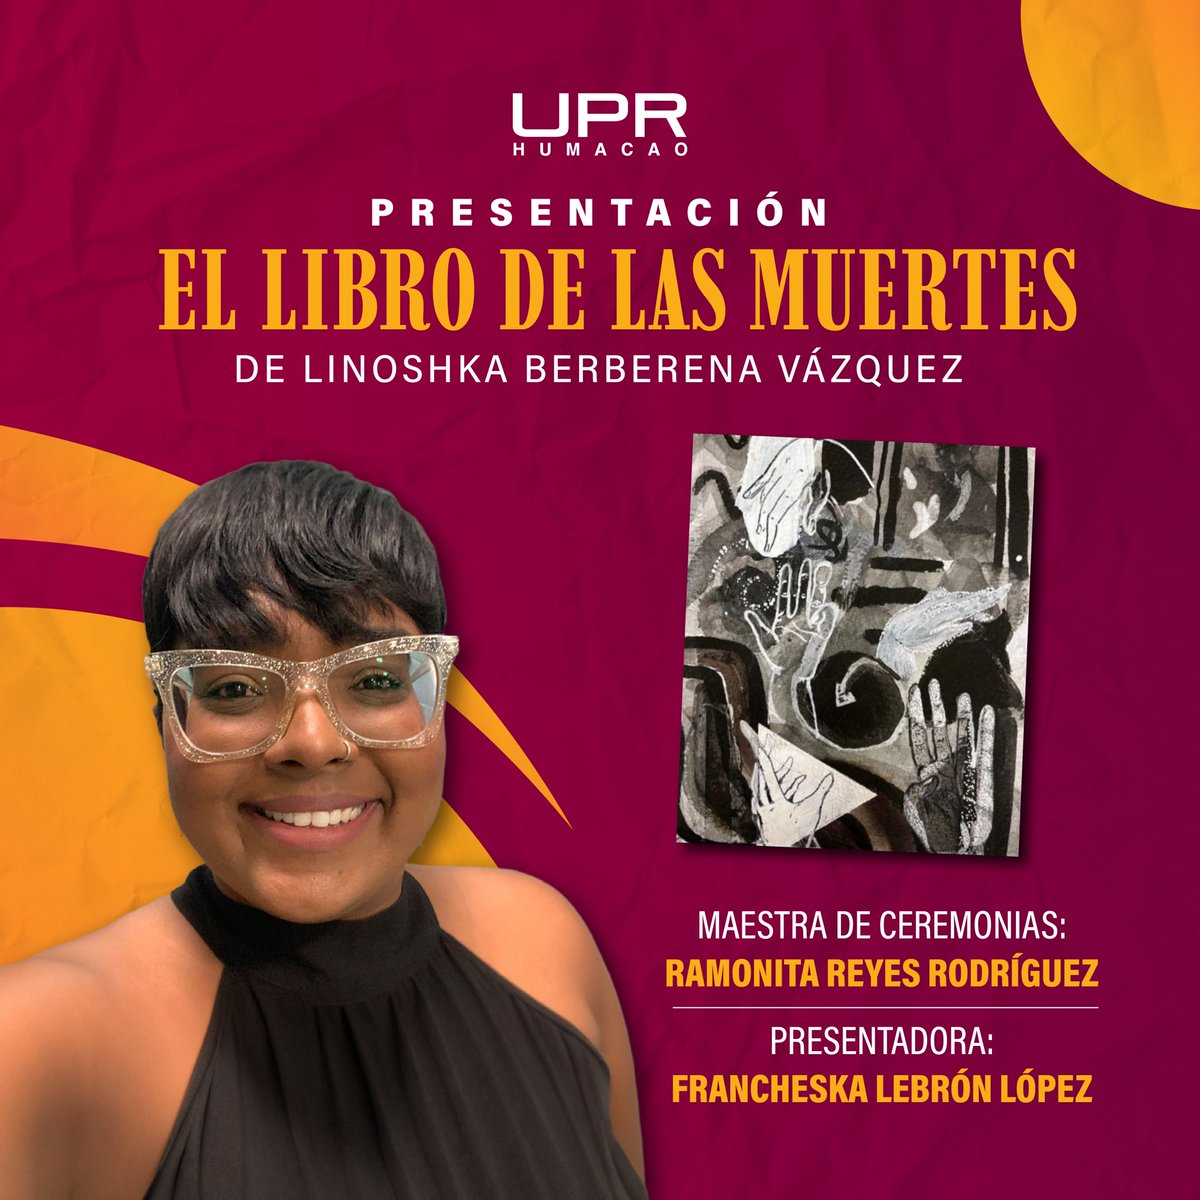 #OrgulloUPRH | Reconocemos a Linoshka Berberena, egresada de UPRH, por la presentación de su 1er poemario El Libro de las Muertes. La profesora participó en la antología Vuelos del Vértigo, la cual fue galardonada con mención honorífica por el PenClub de PR 2020.

¡Enhorabuena!